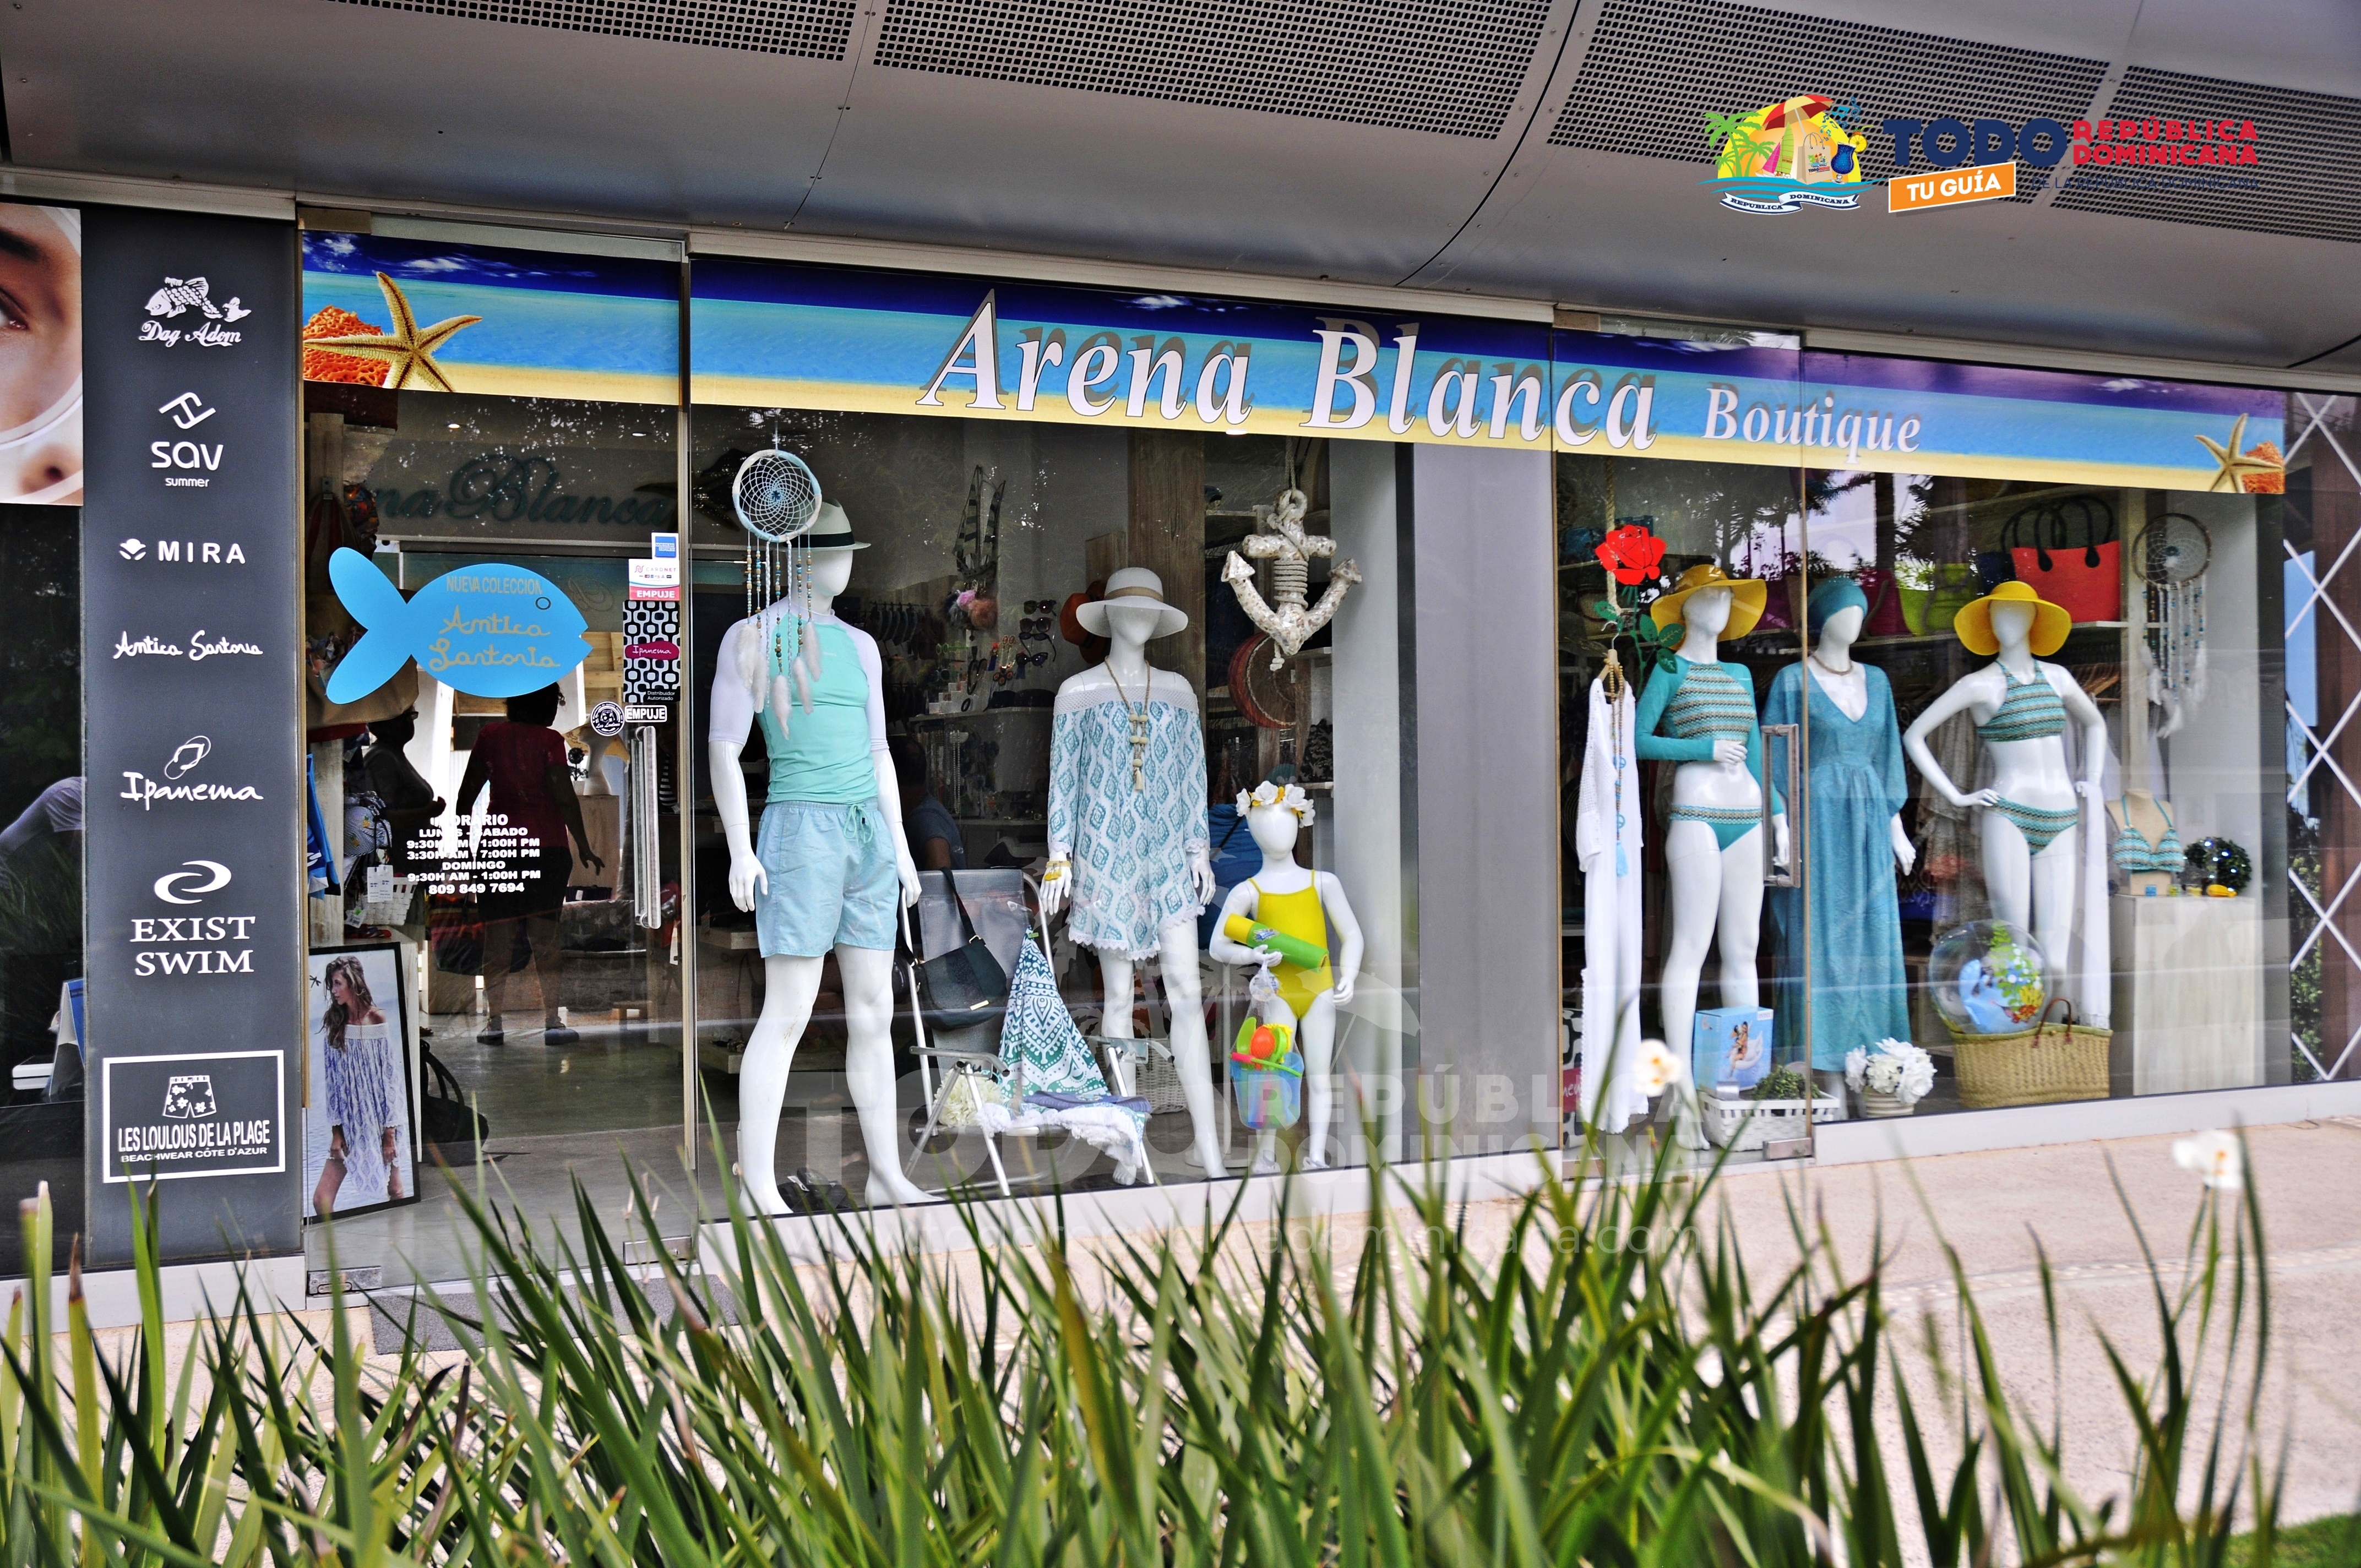 Arena Blanca Boutique | Tiendas Ropa y Accesorios Playa Ir de compras